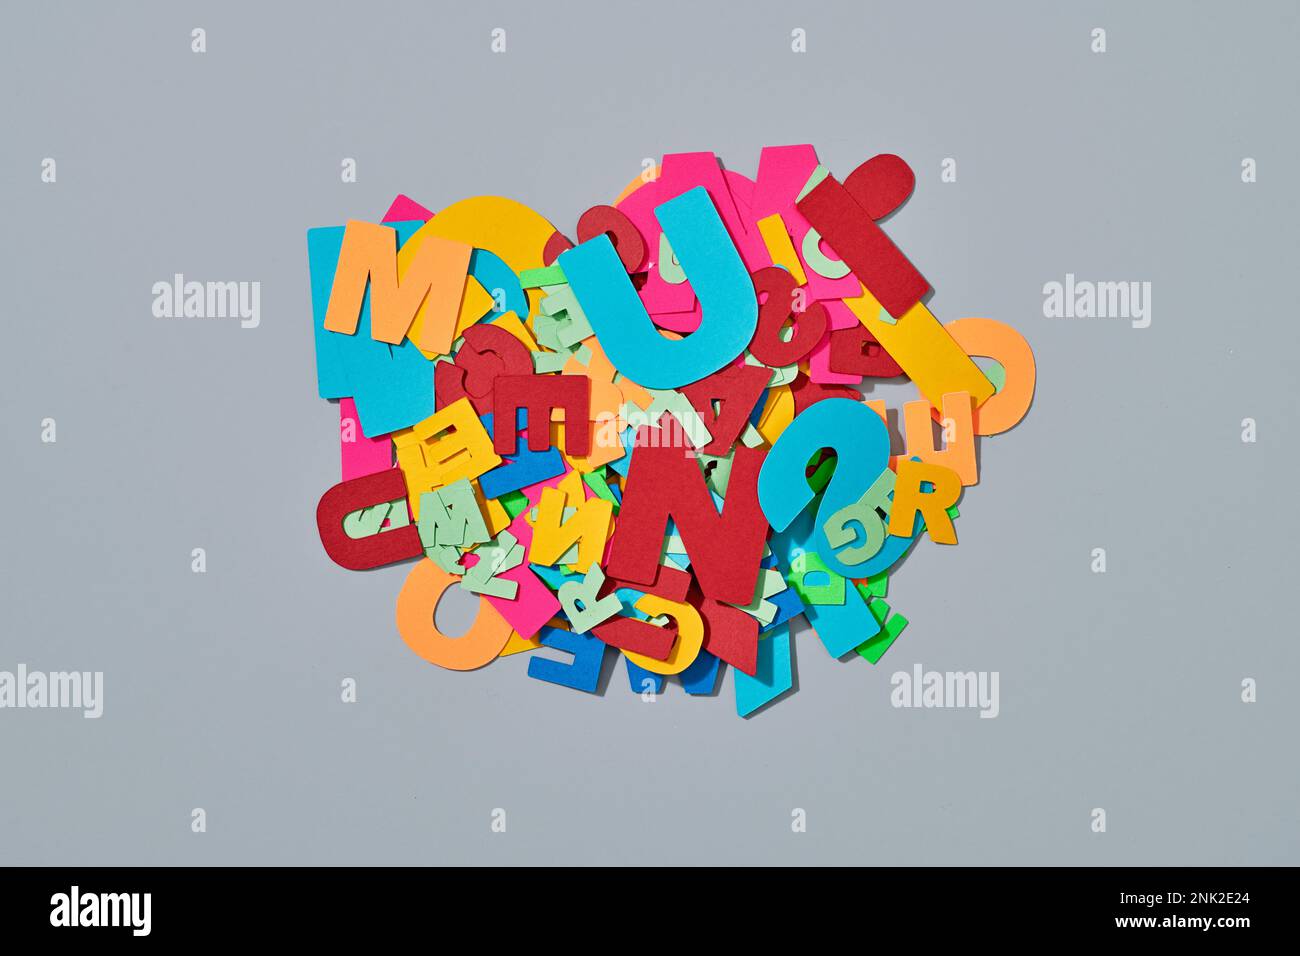 visualizzazione ad angolo elevato di un gruppo di lettere di carta di diversi colori e formati, su sfondo grigio Foto Stock